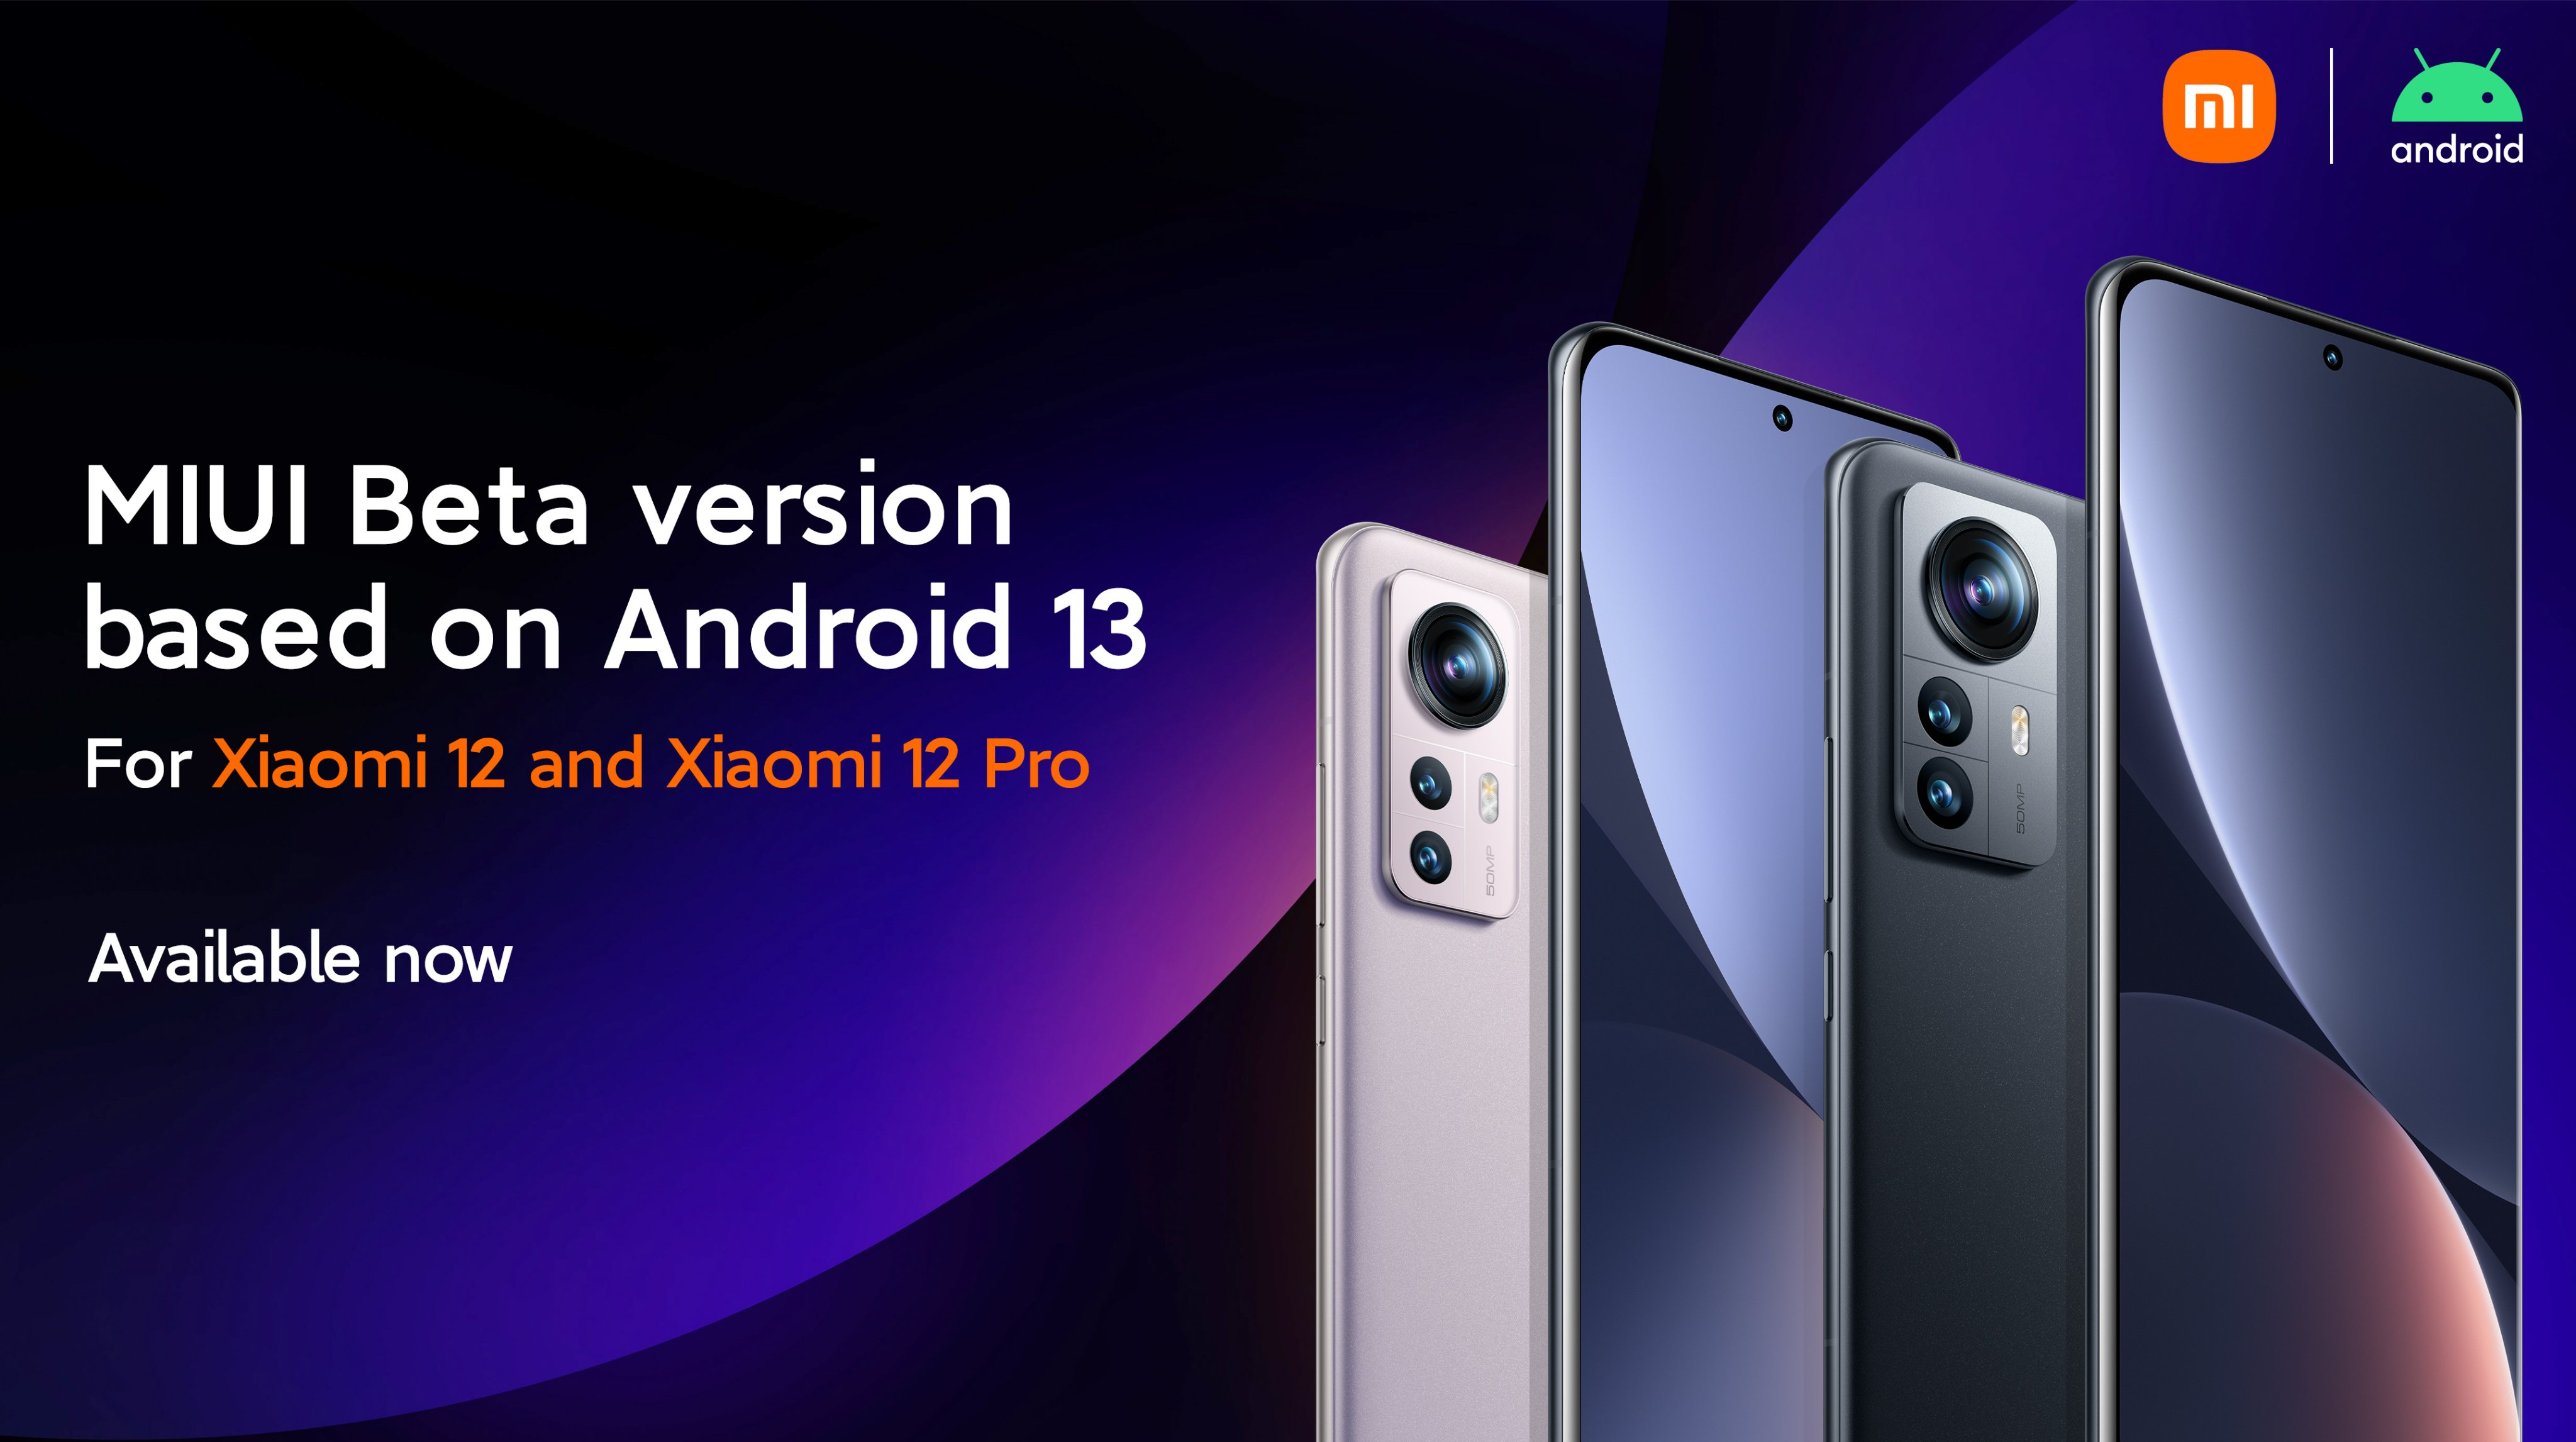 Xiaomi 12 y Xiaomi 12 Pro reciben una versión beta de MIUI 13 basada en Android 13